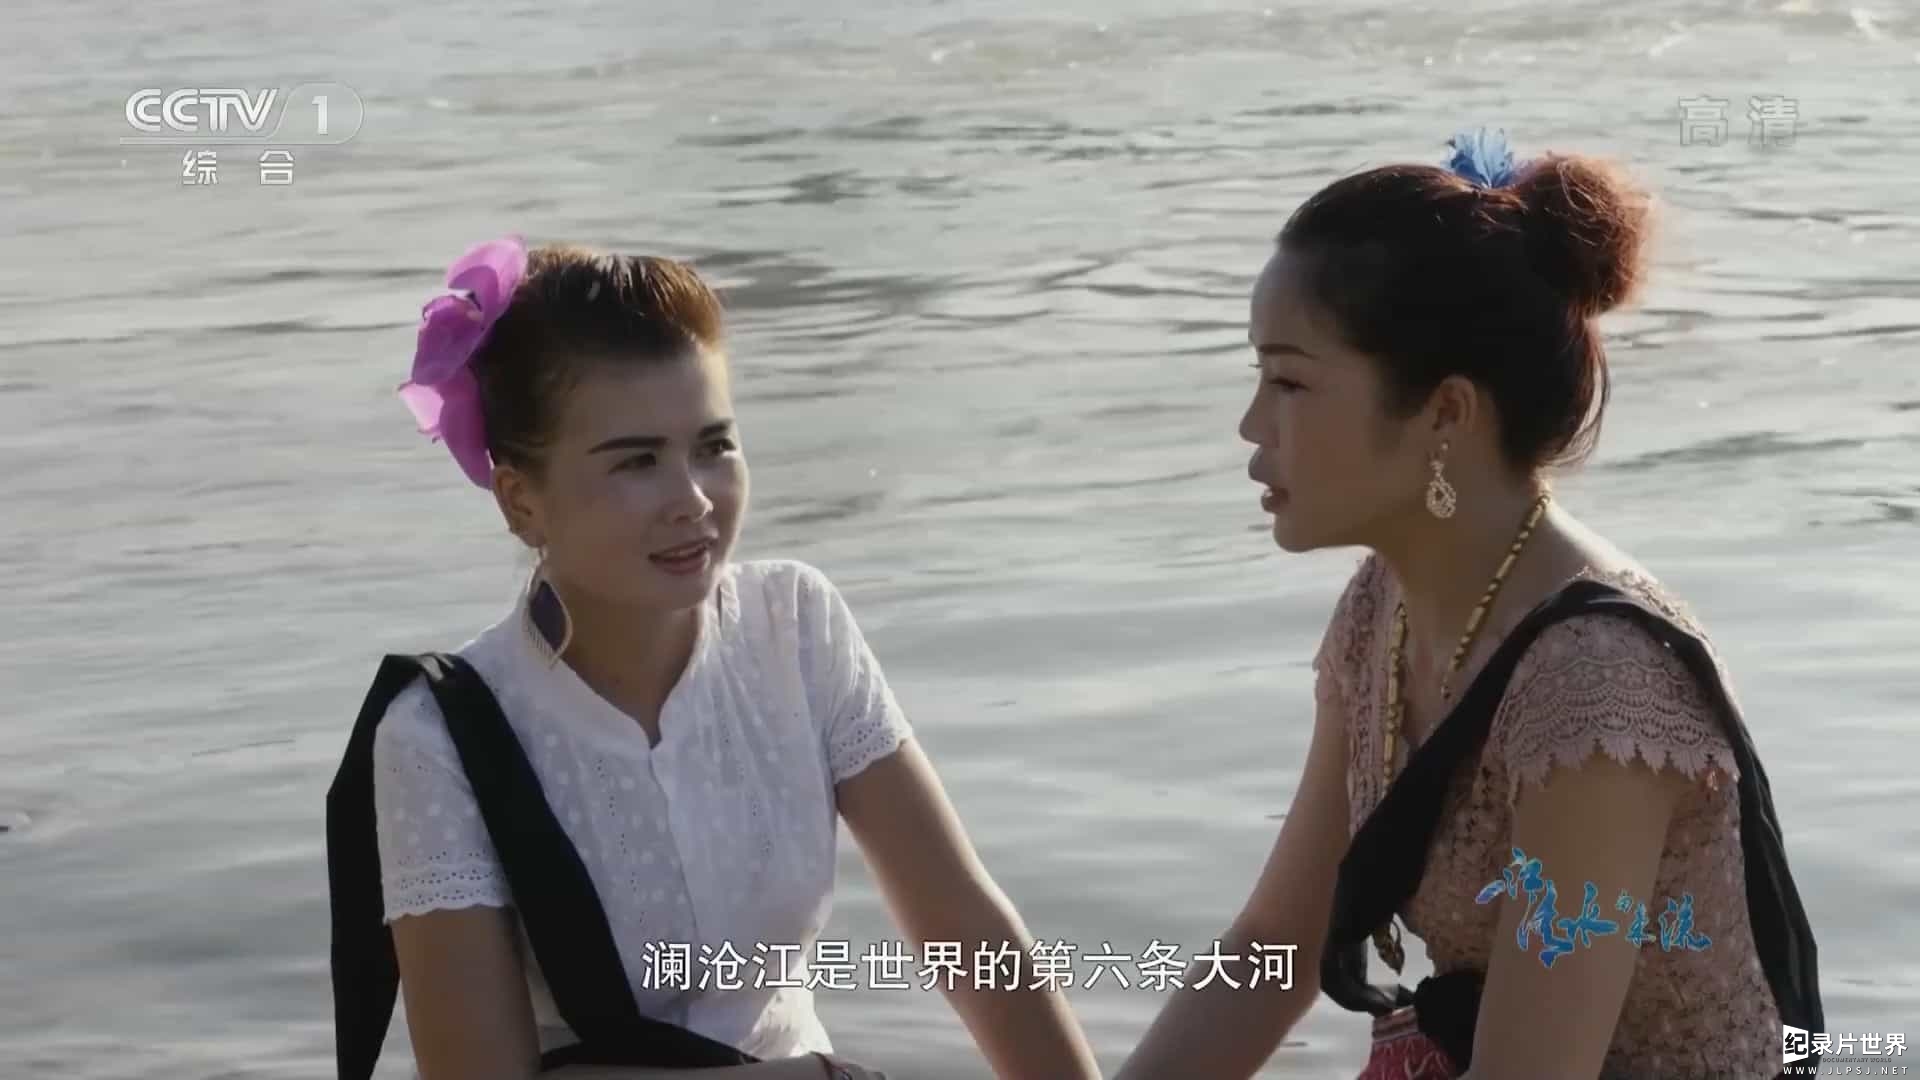 央视大型人文生态纪录片《一江清水向东流 2018》全6集